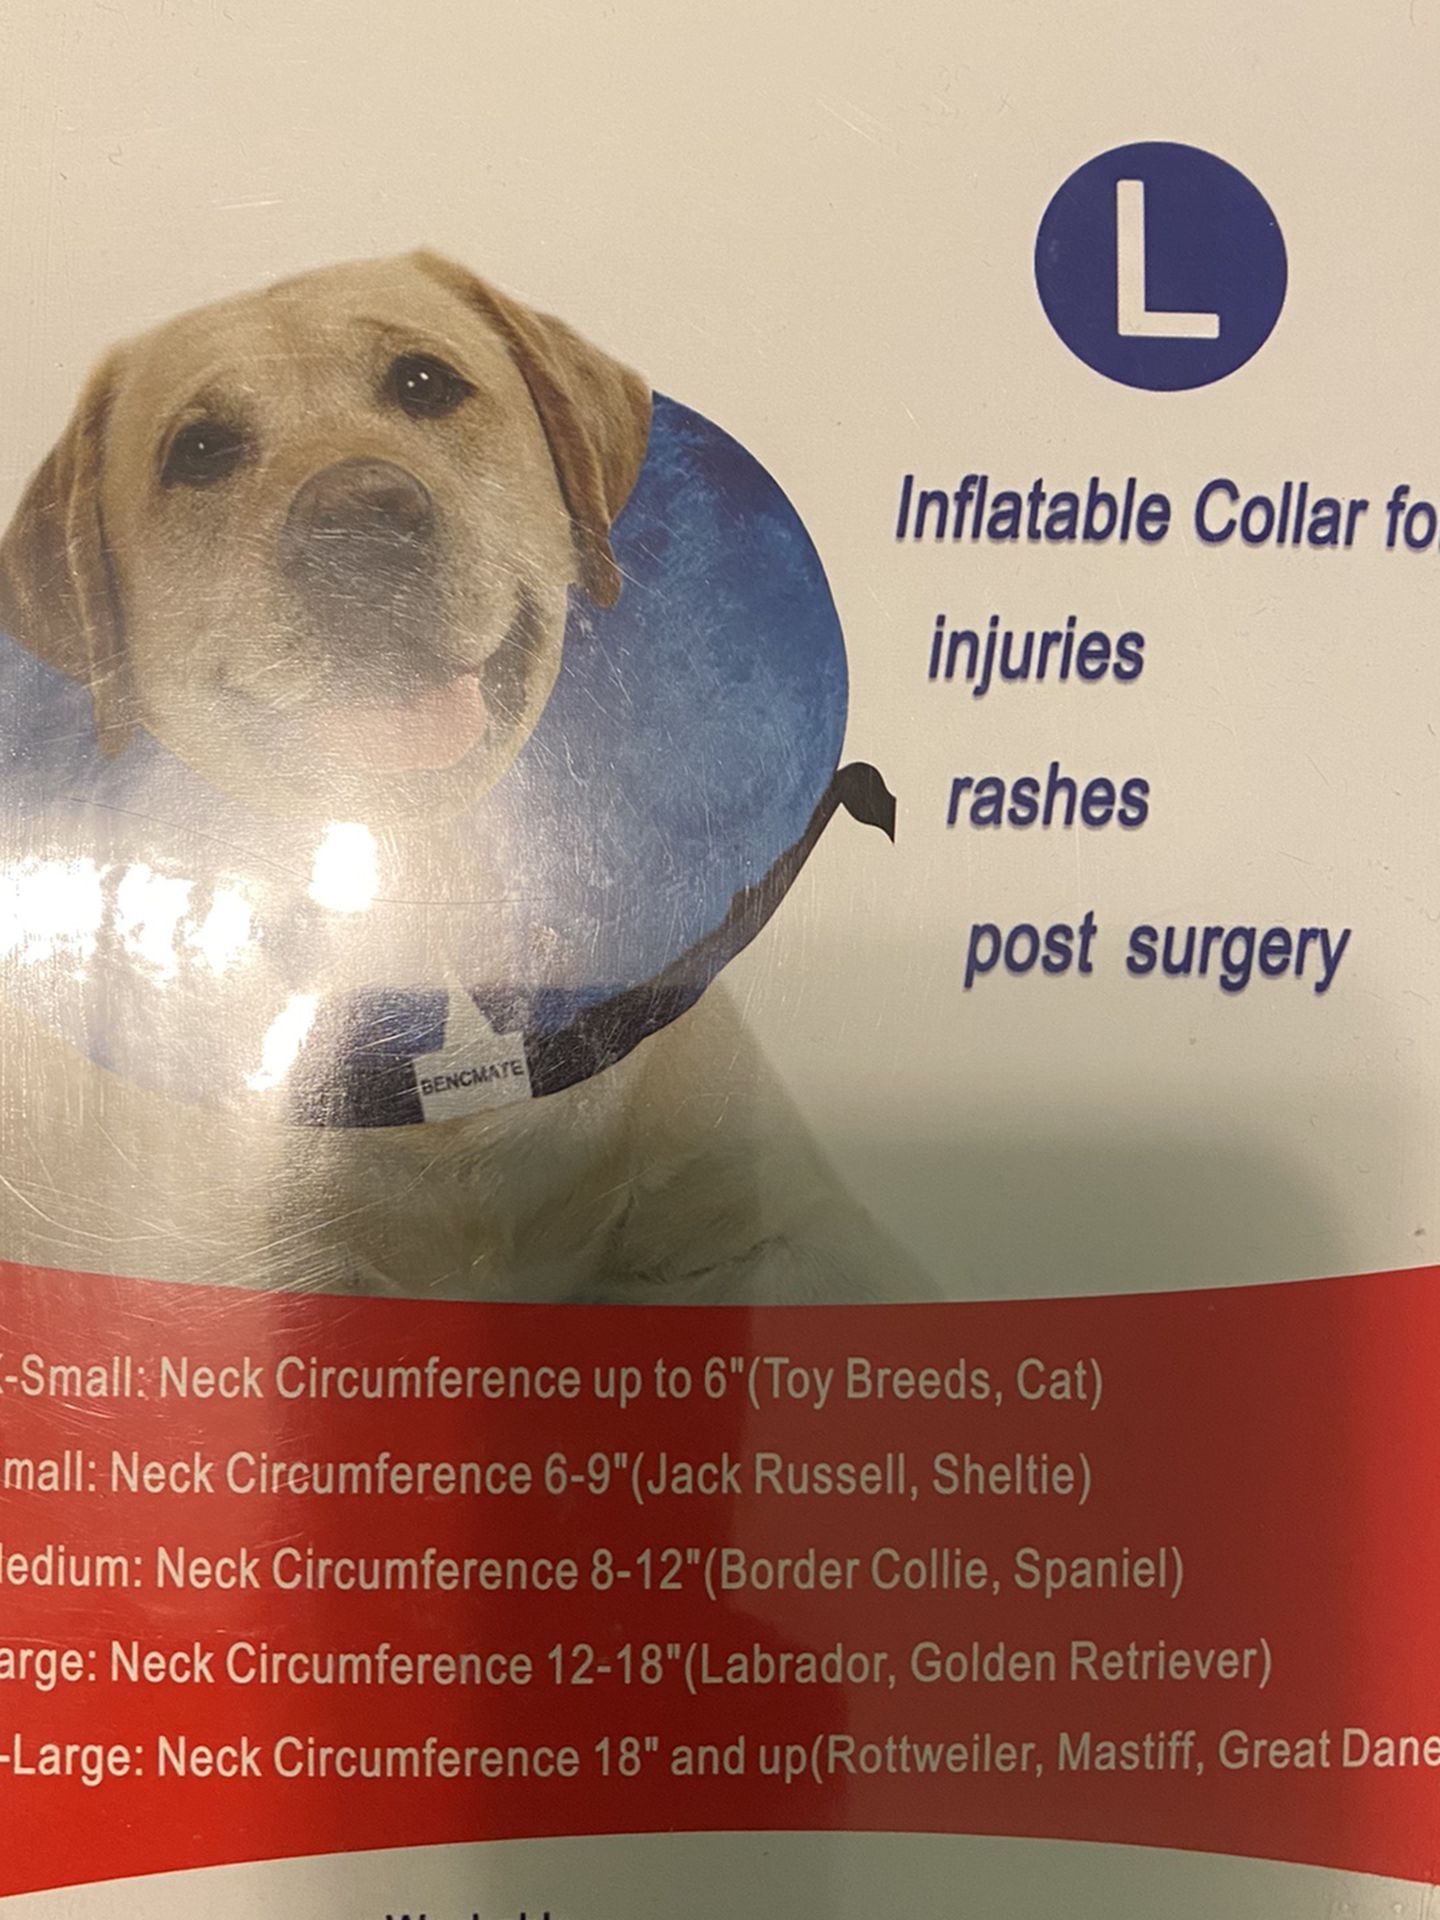 Inflatable Dog Collar - Bencmate